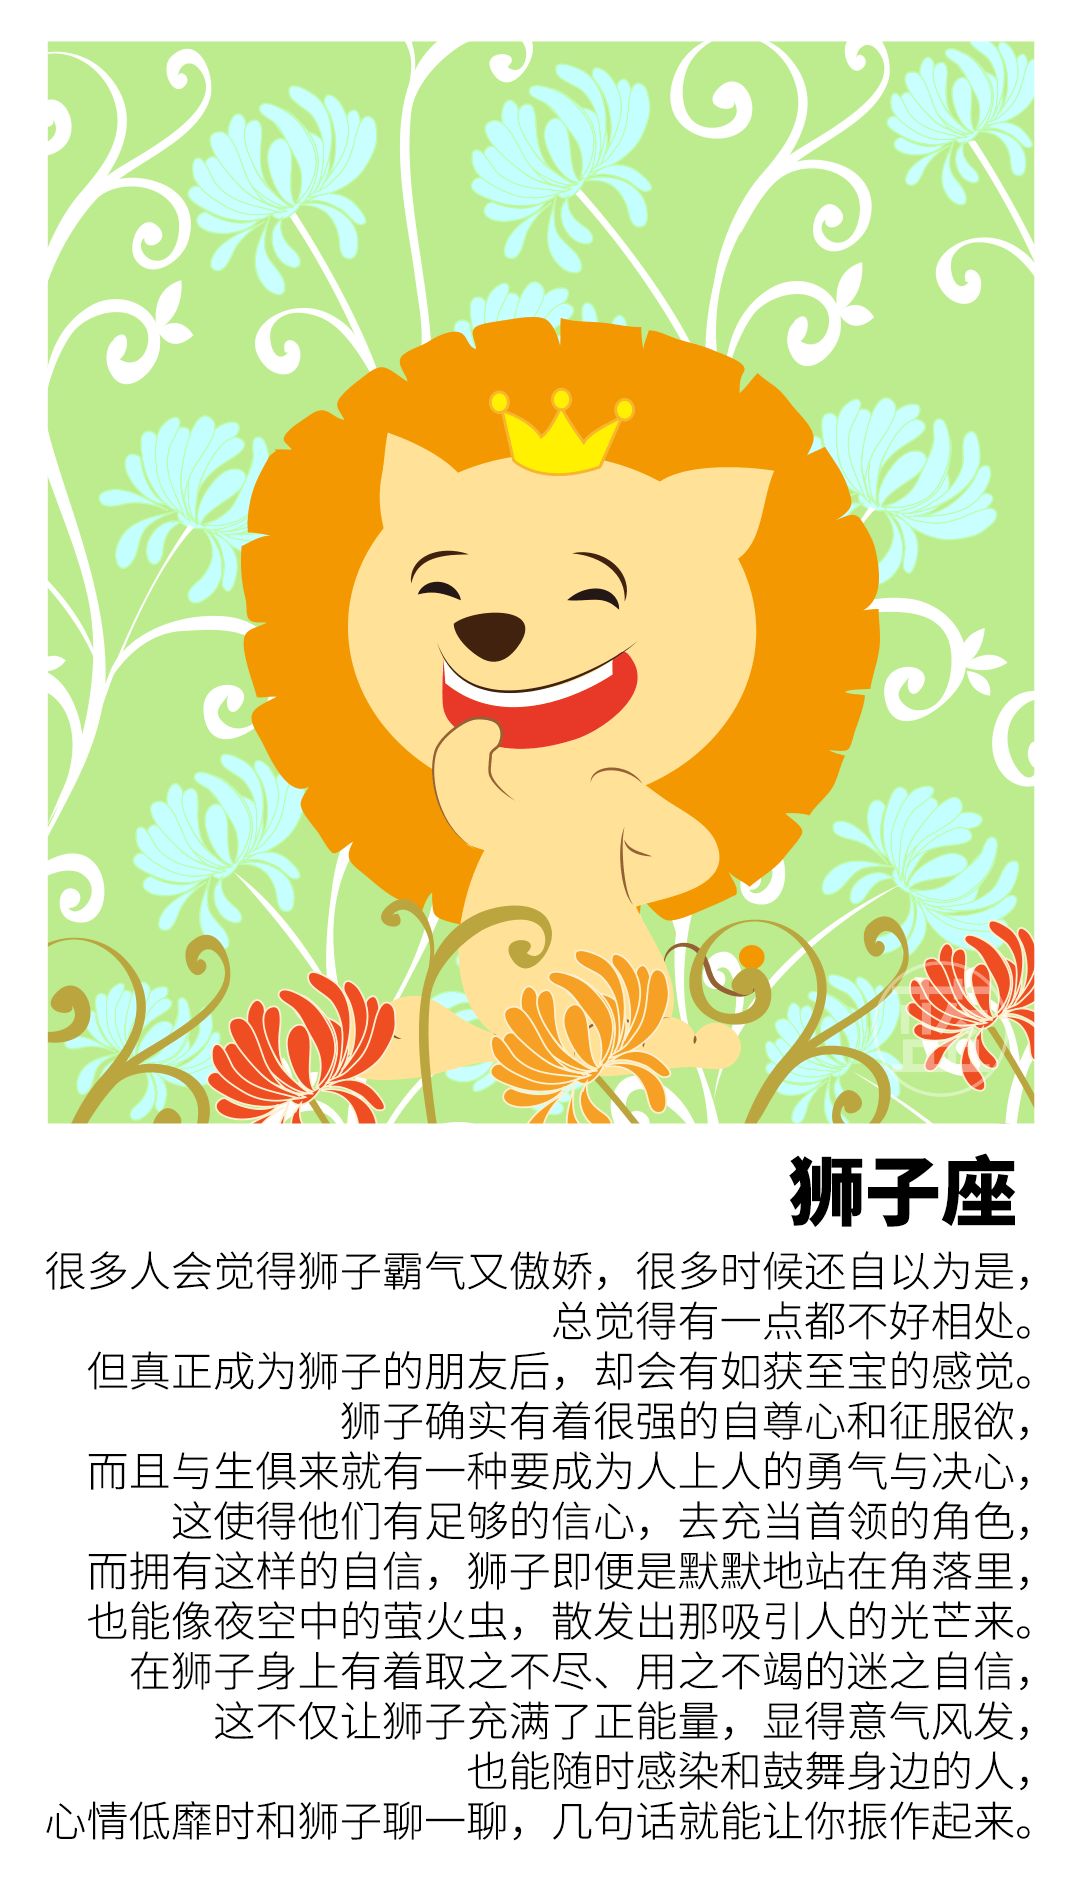 小动物们在森林里庆祝狮子过生日 儿童插画_站酷海洛_正版图片_视频_字体_音乐素材交易平台_站酷旗下品牌